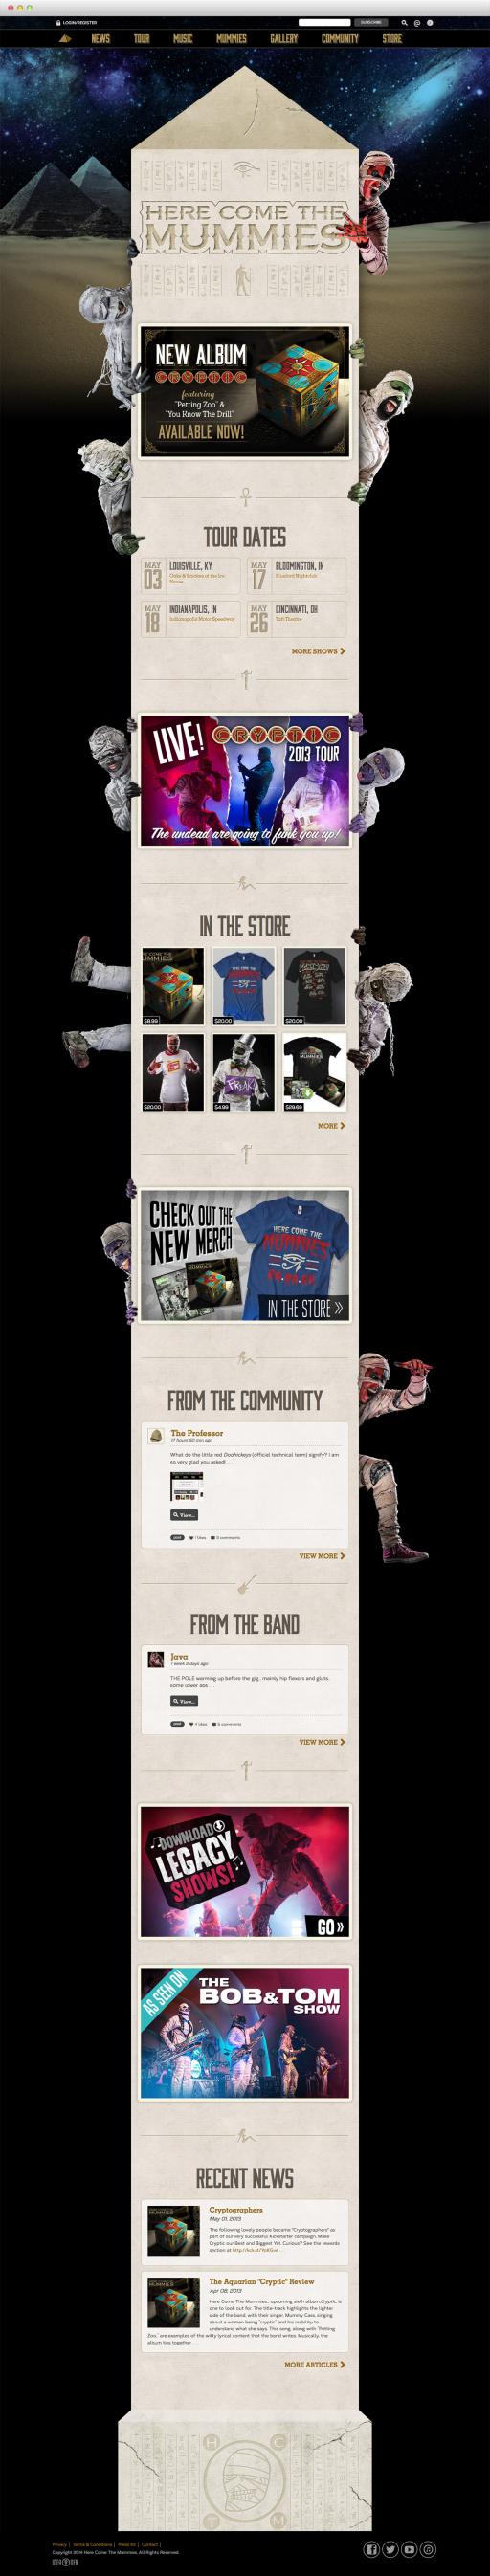 Here Come The Mummies - Homepage Screenshots